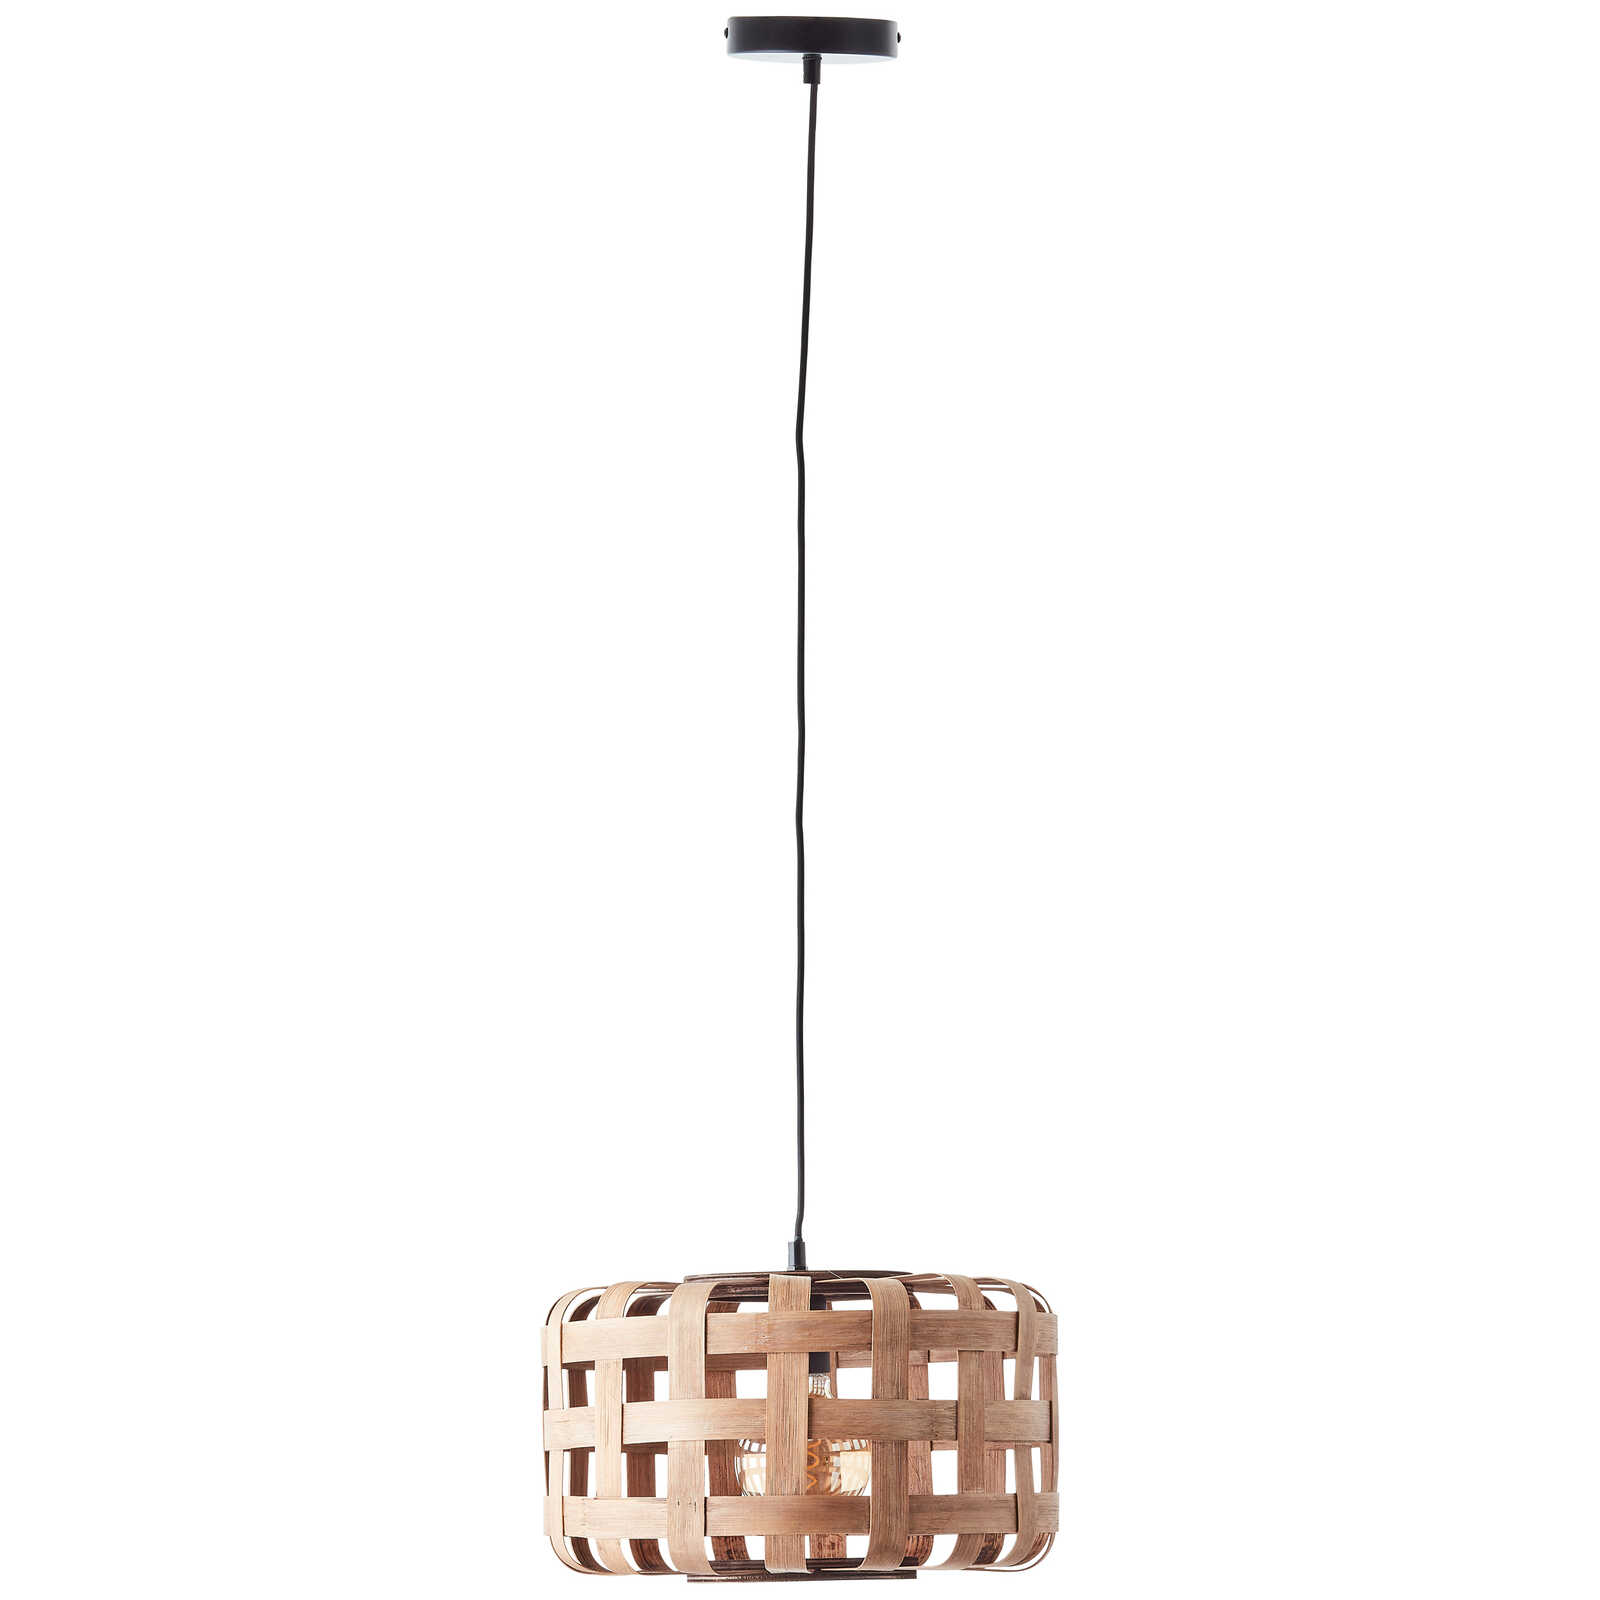             Bamboe hanglamp - Wilhelm 3 - Bruin
        